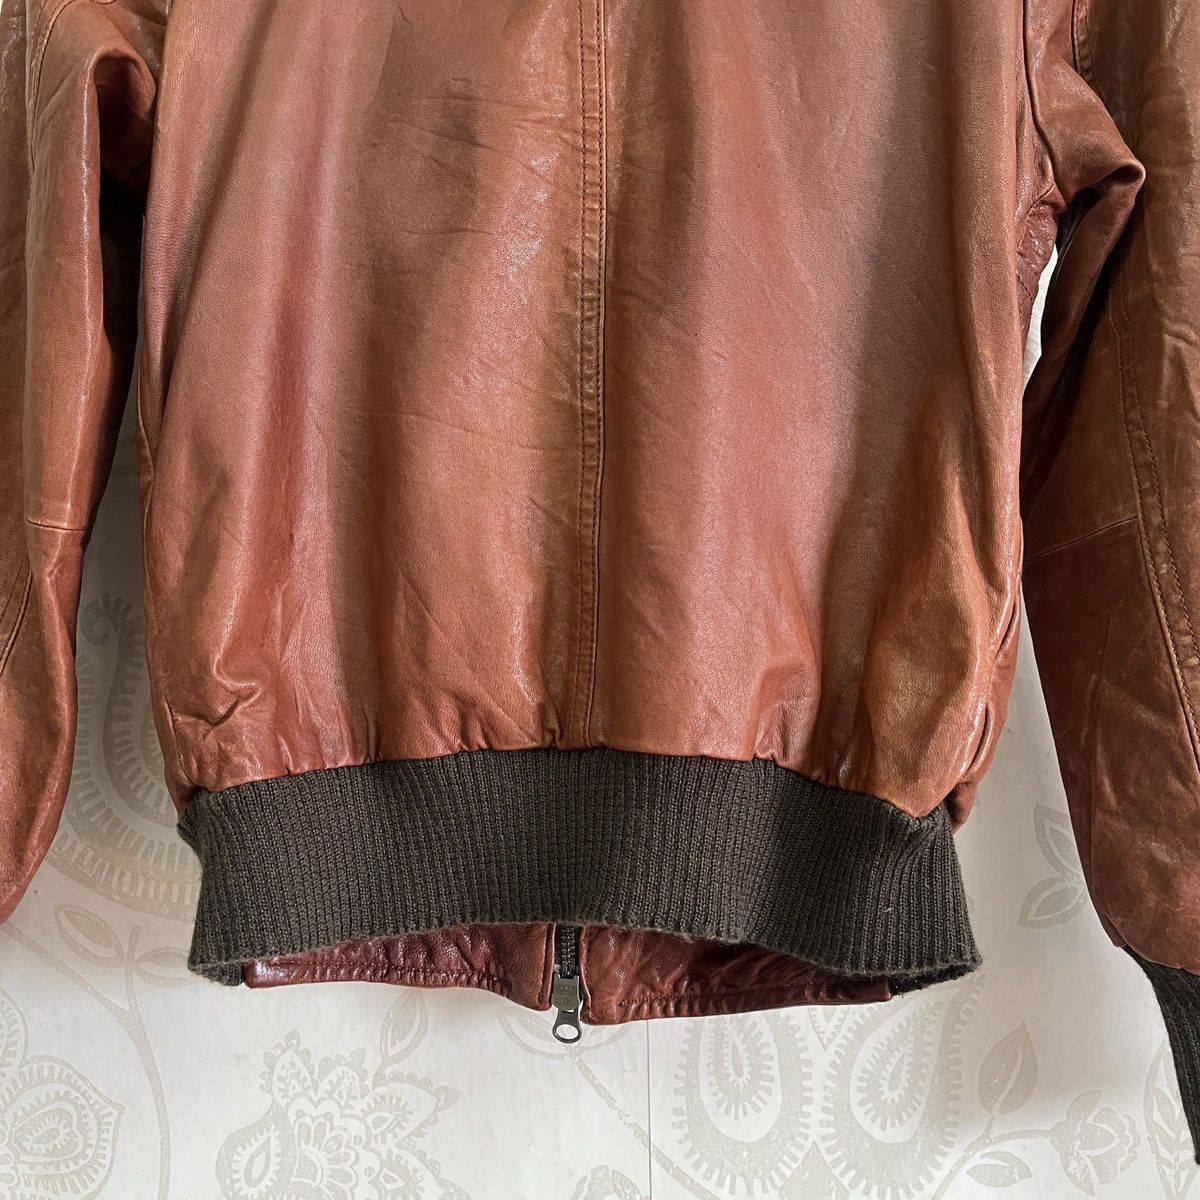 Seditionaries - Bondage Pas De Calais Sheepskin Leather Jacket Size 38 - 14